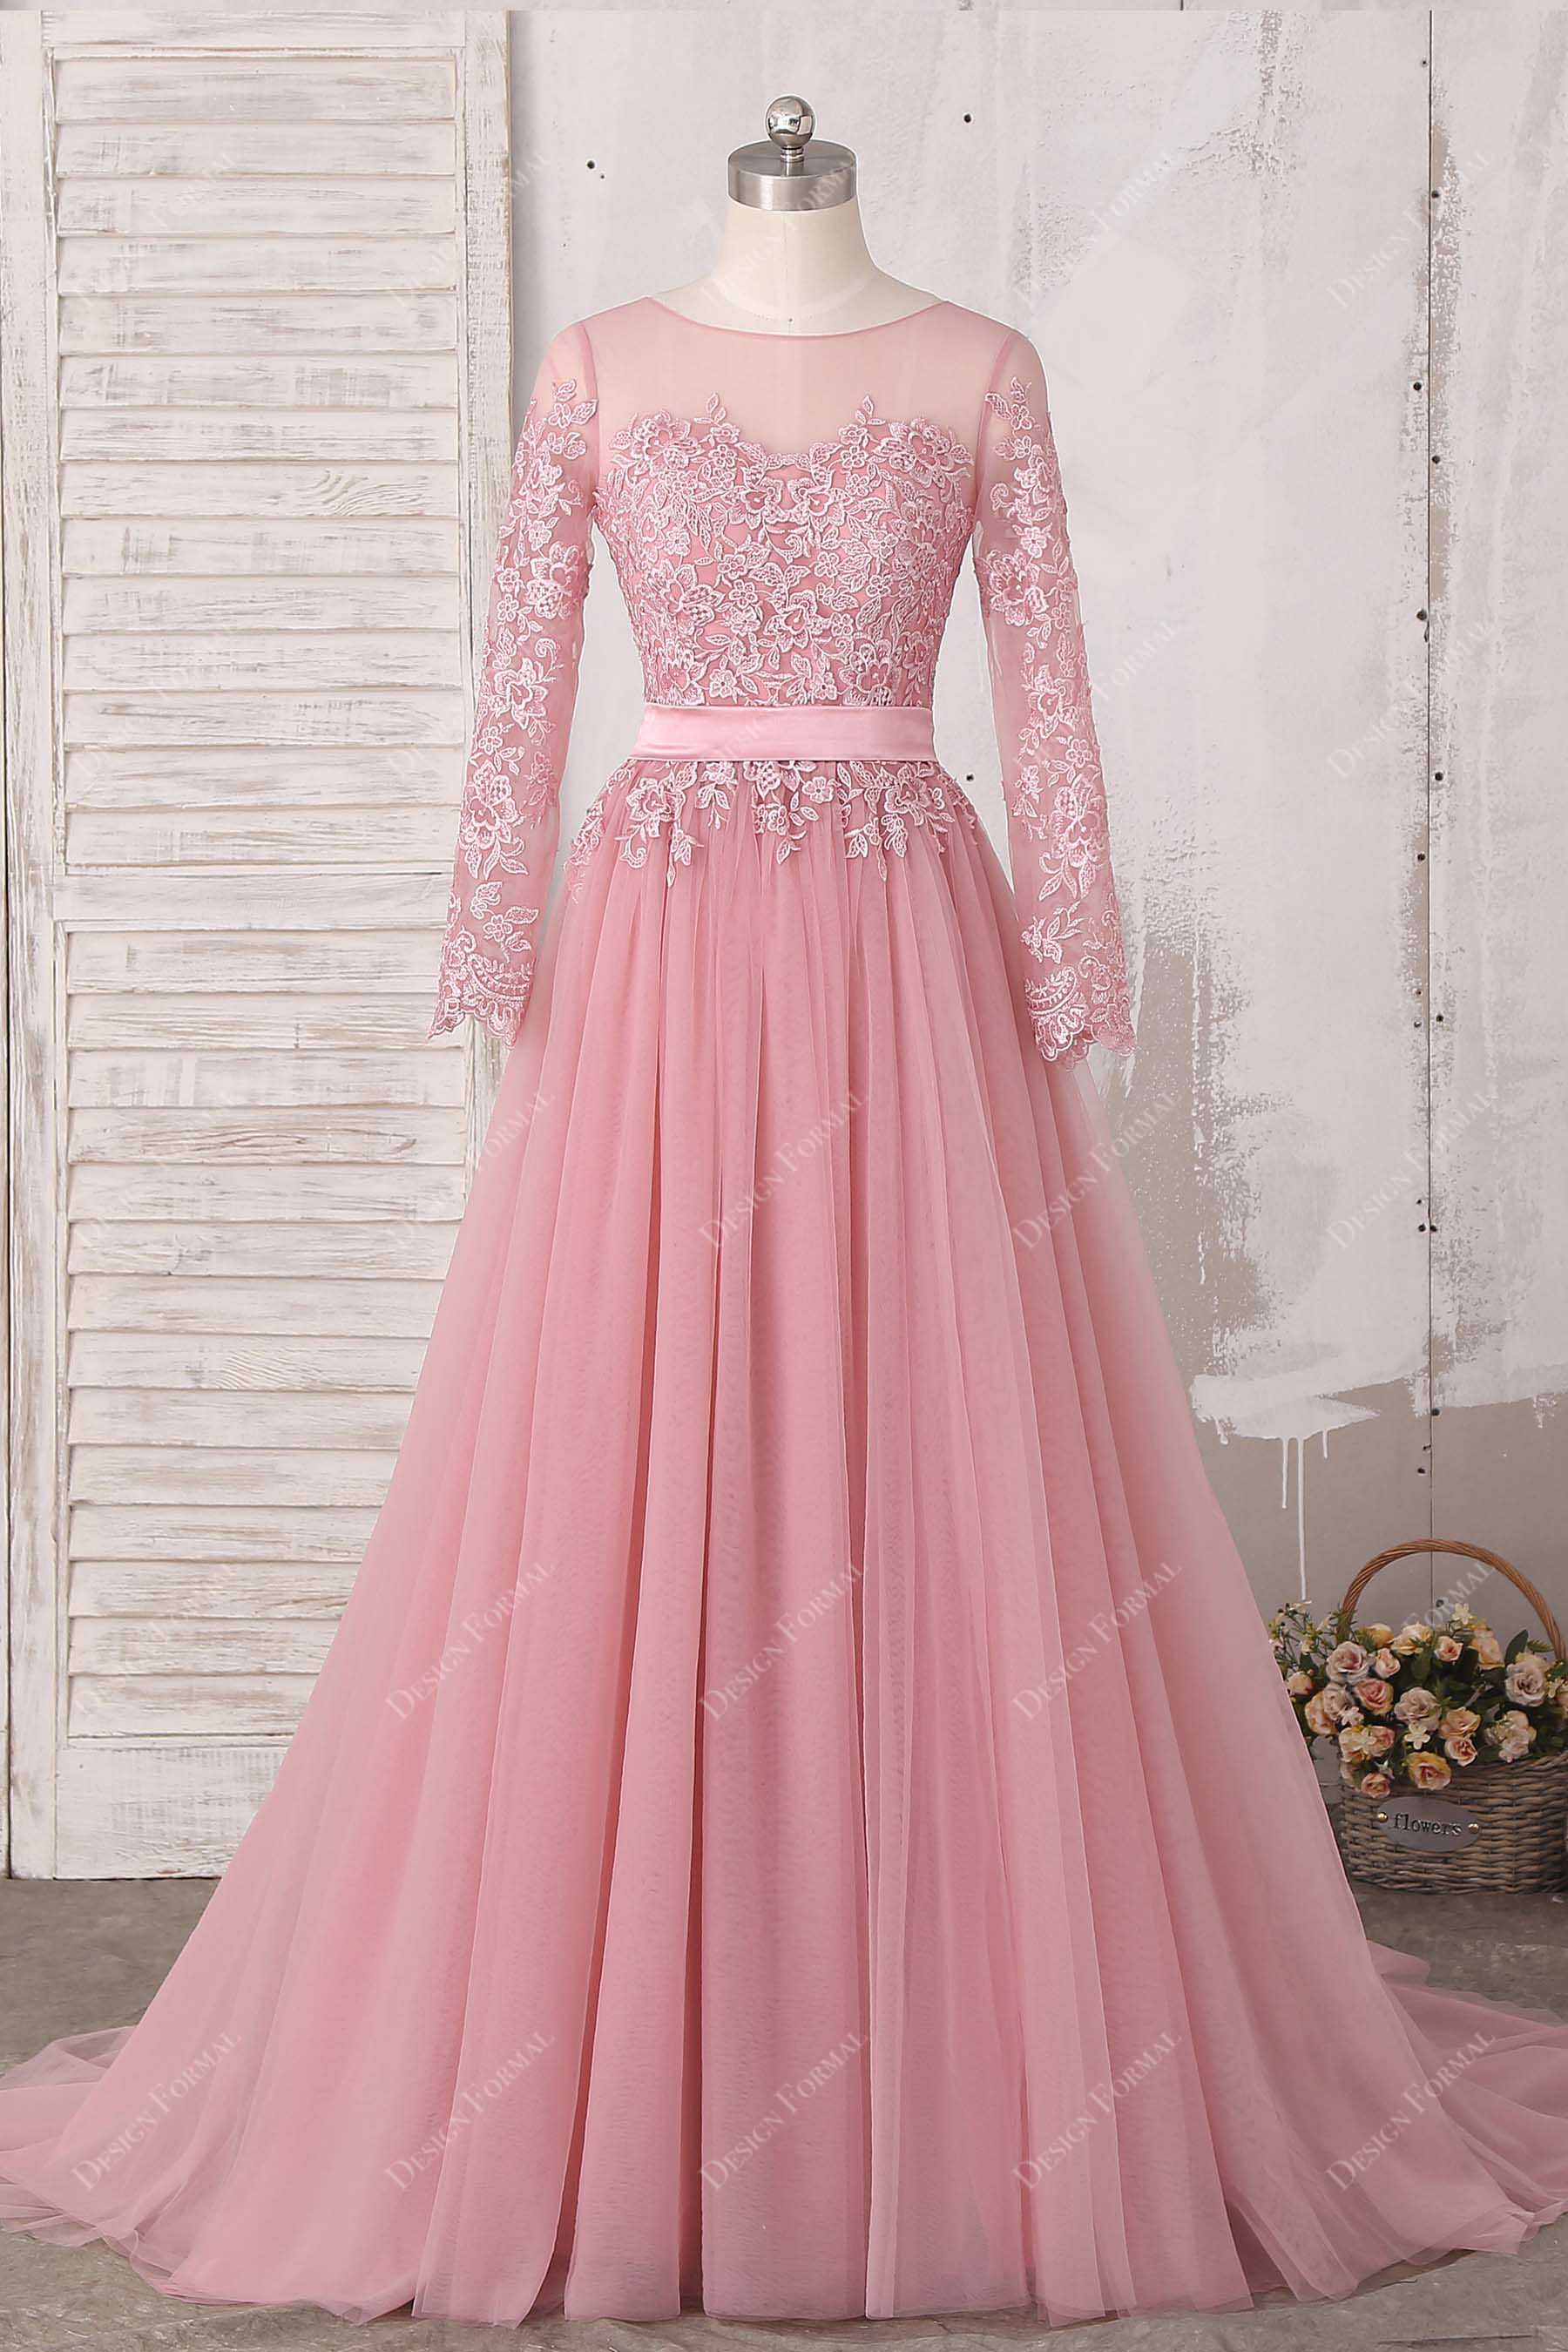 Breathtaking Dusty Pink Sheer Tulle Ballet Dress - Xdressy